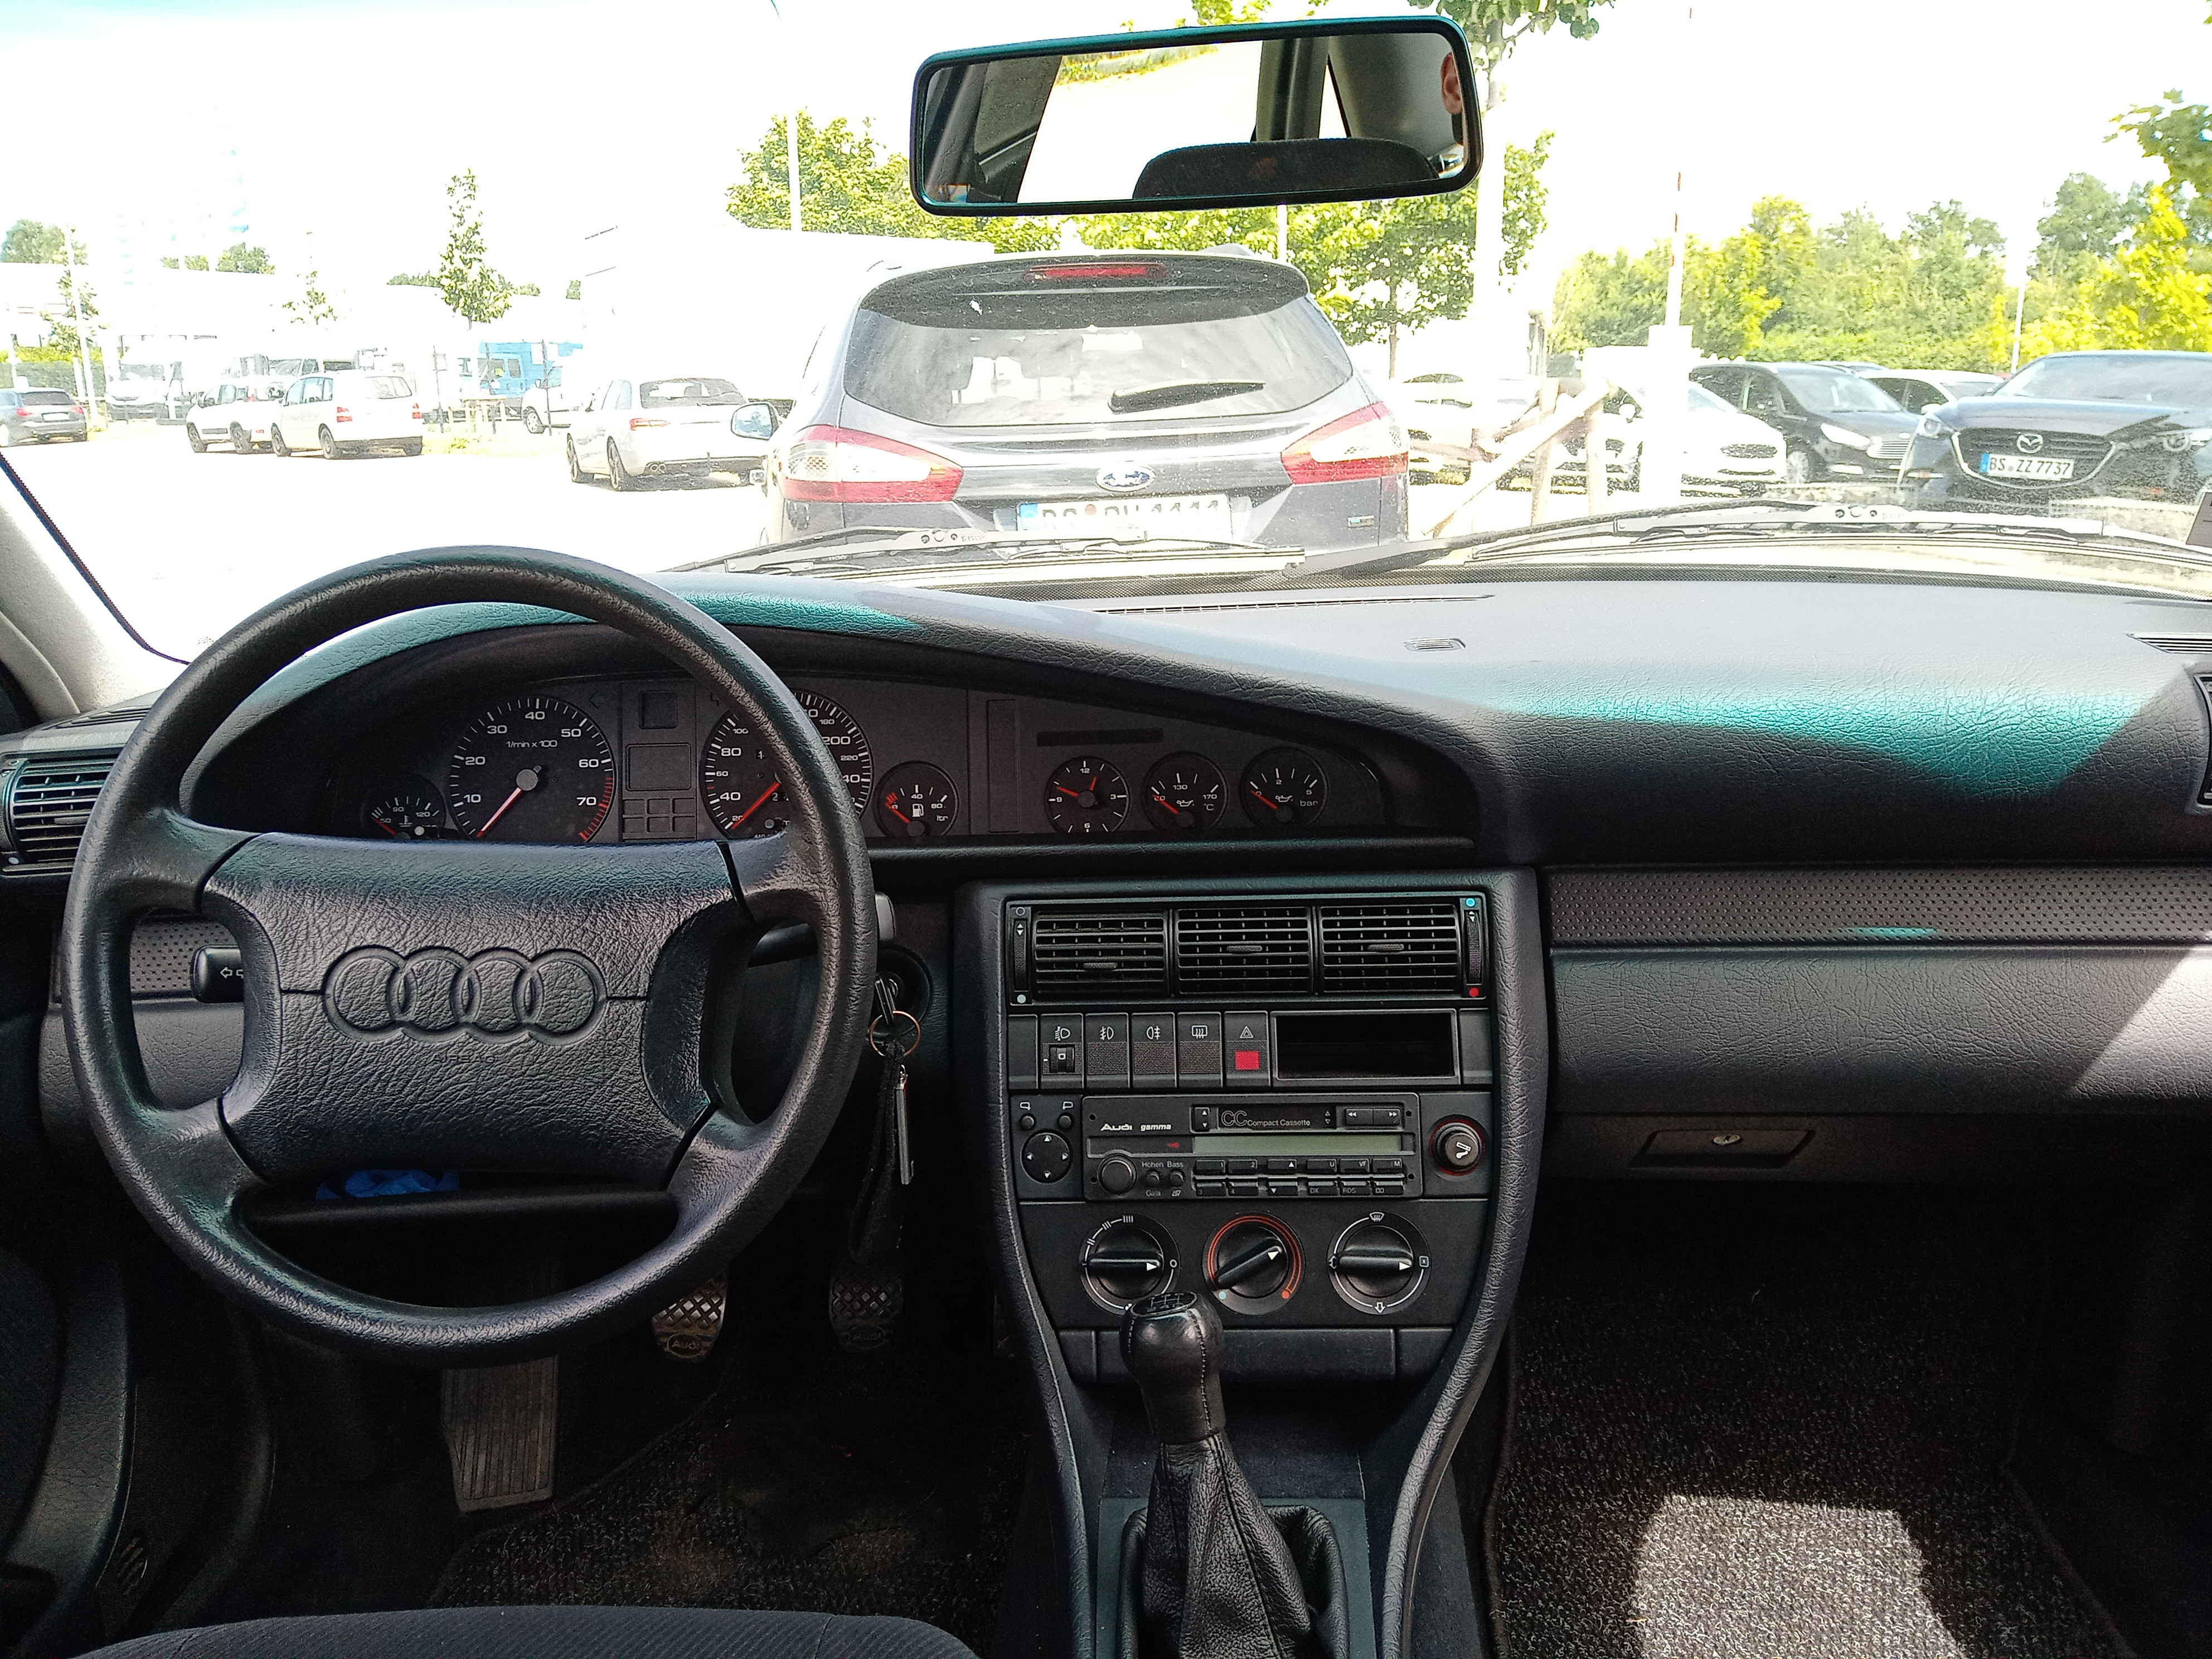 Audi 100 interior - Cockpit